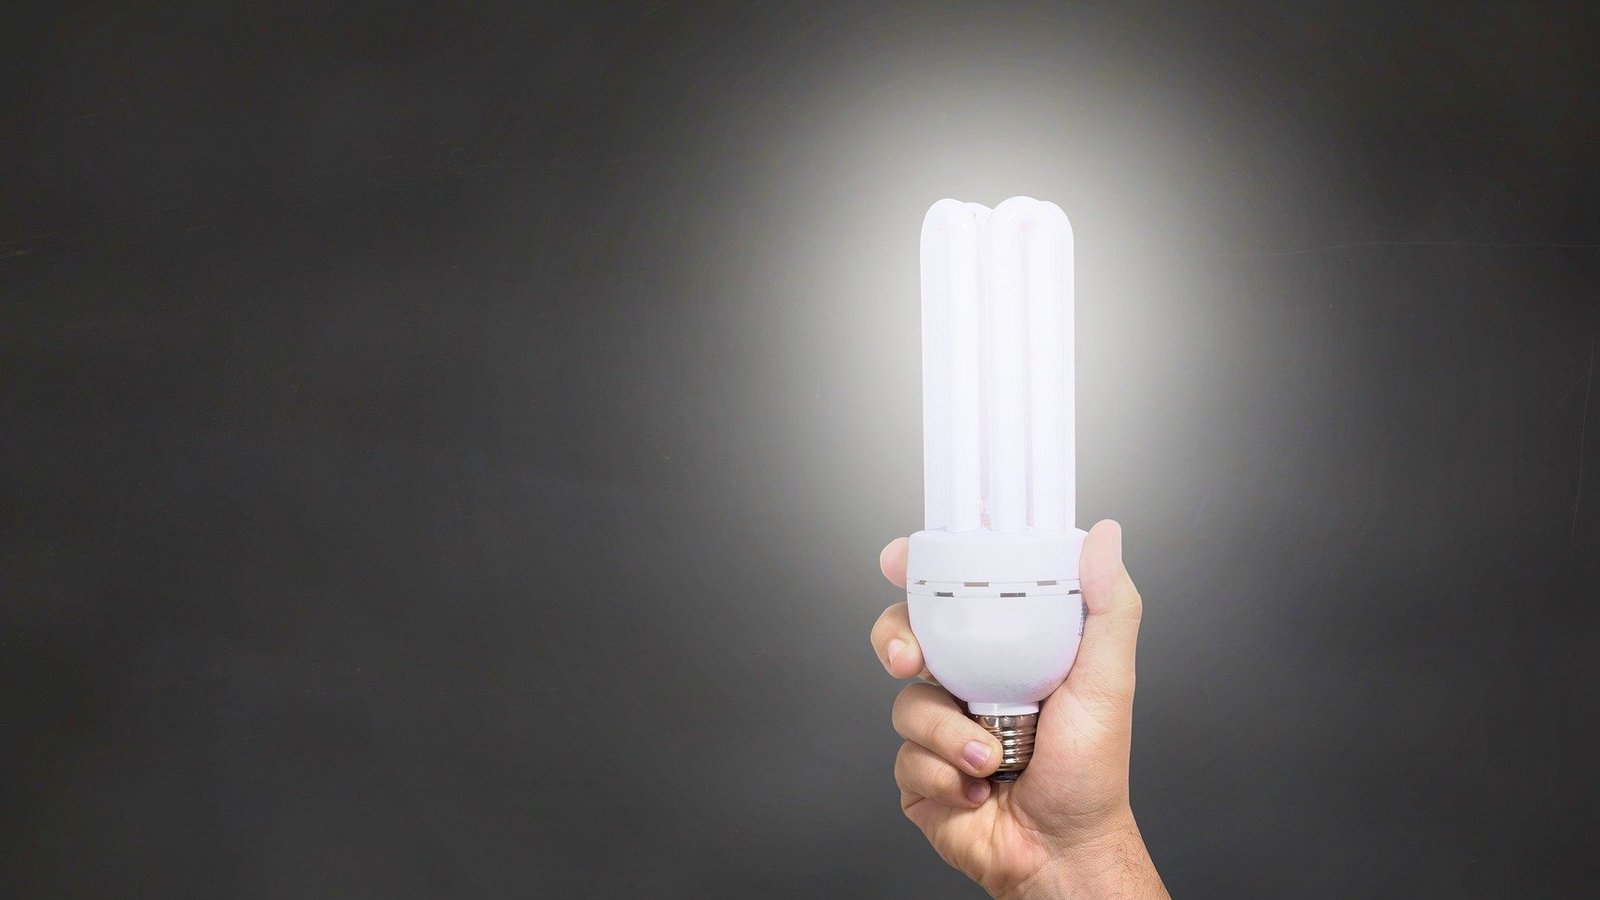 Ein Wechsel von Glühbirnen zu LEDs im gesamten Haushalt lohnt sich laut Energieberater schon nach kurzer Zeit. Foto: Reche/Pixabay